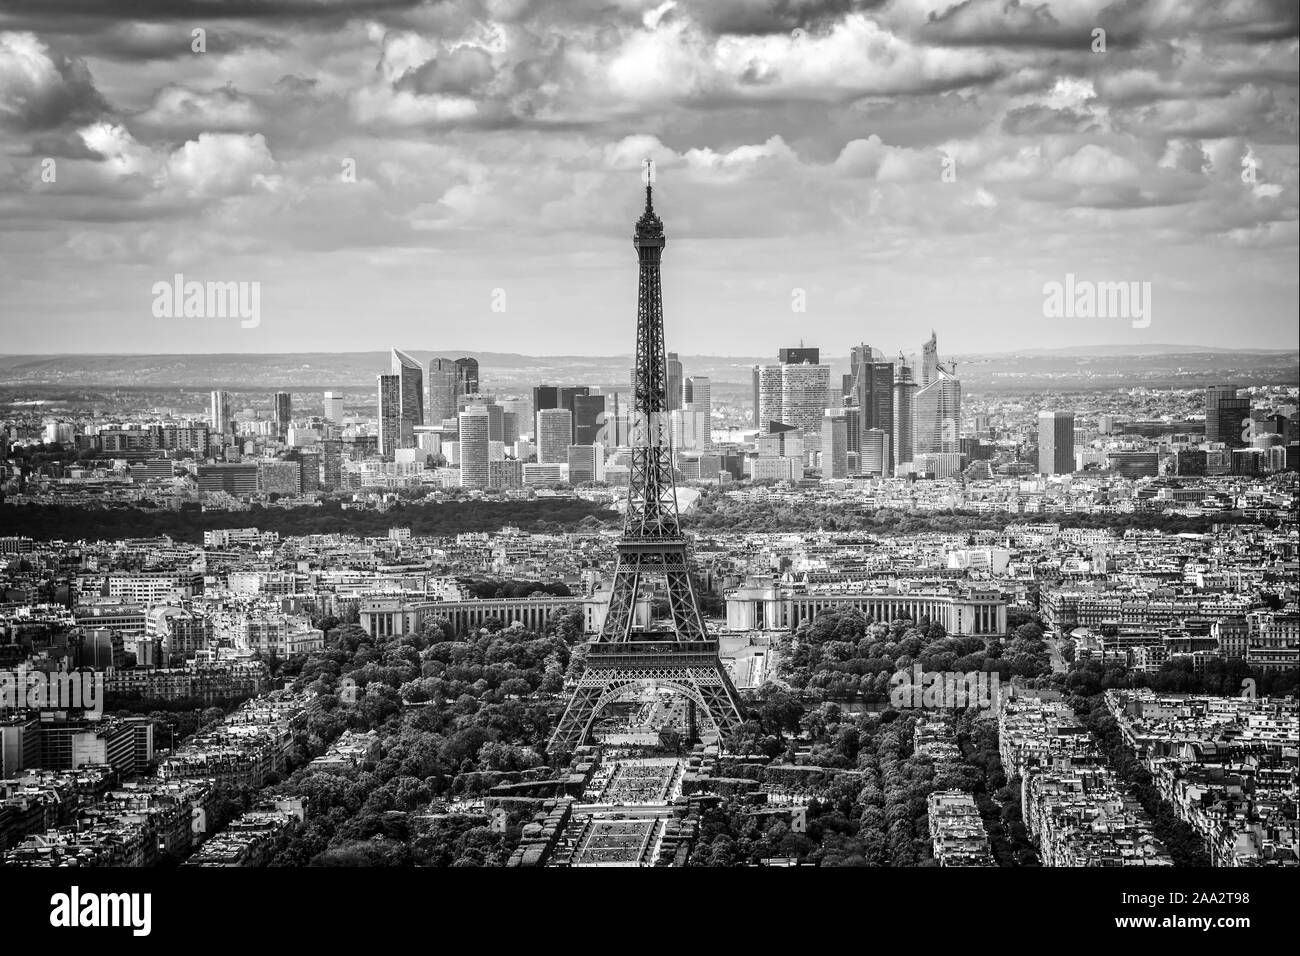 Vue panoramique aérienne de Paris avec la Tour Eiffel et quartier des affaires de la Défense, Skyline, noir et blanc Banque D'Images